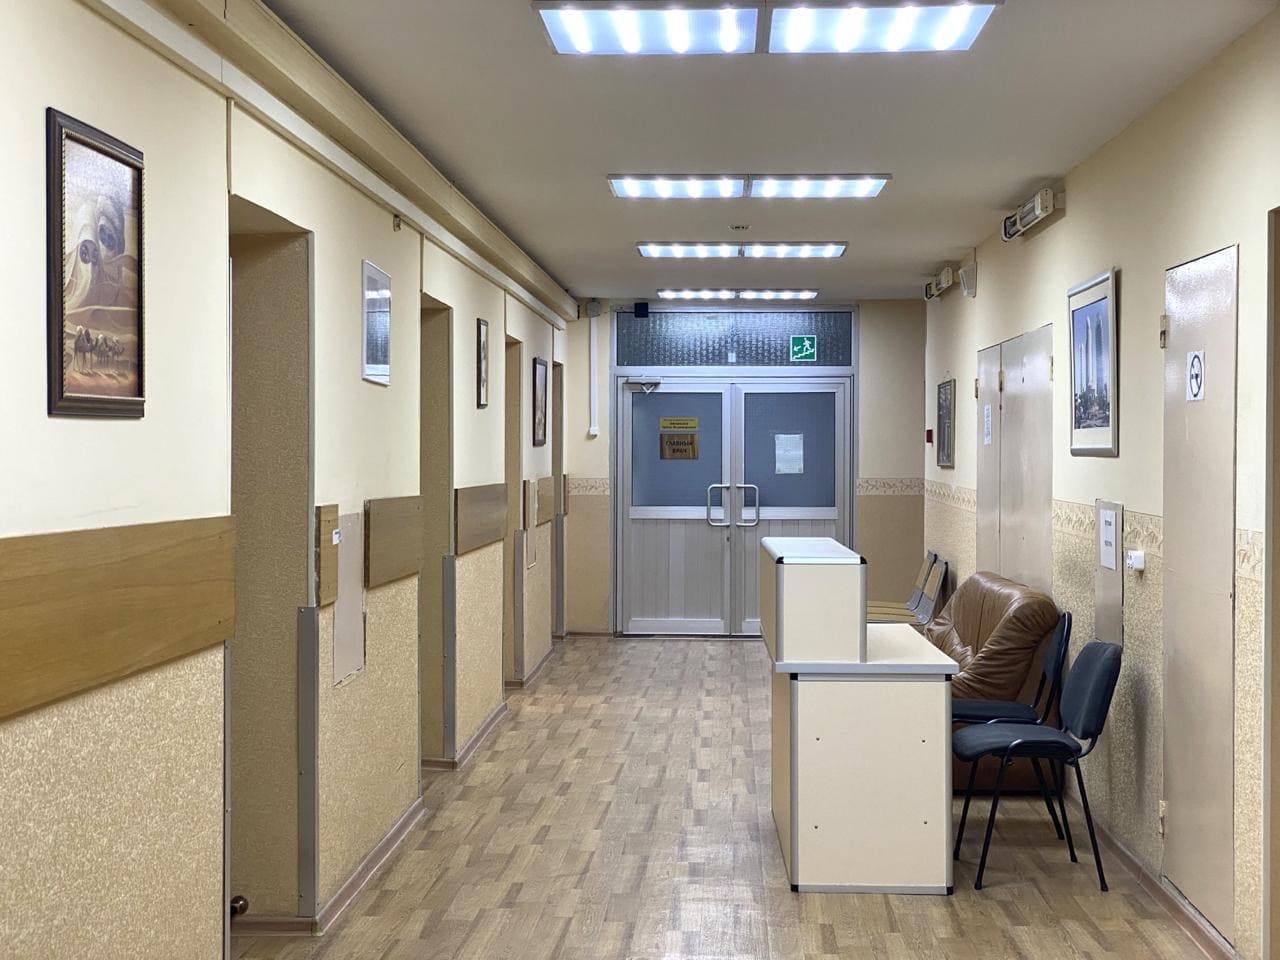 Частная психиатрическая клиника по москве